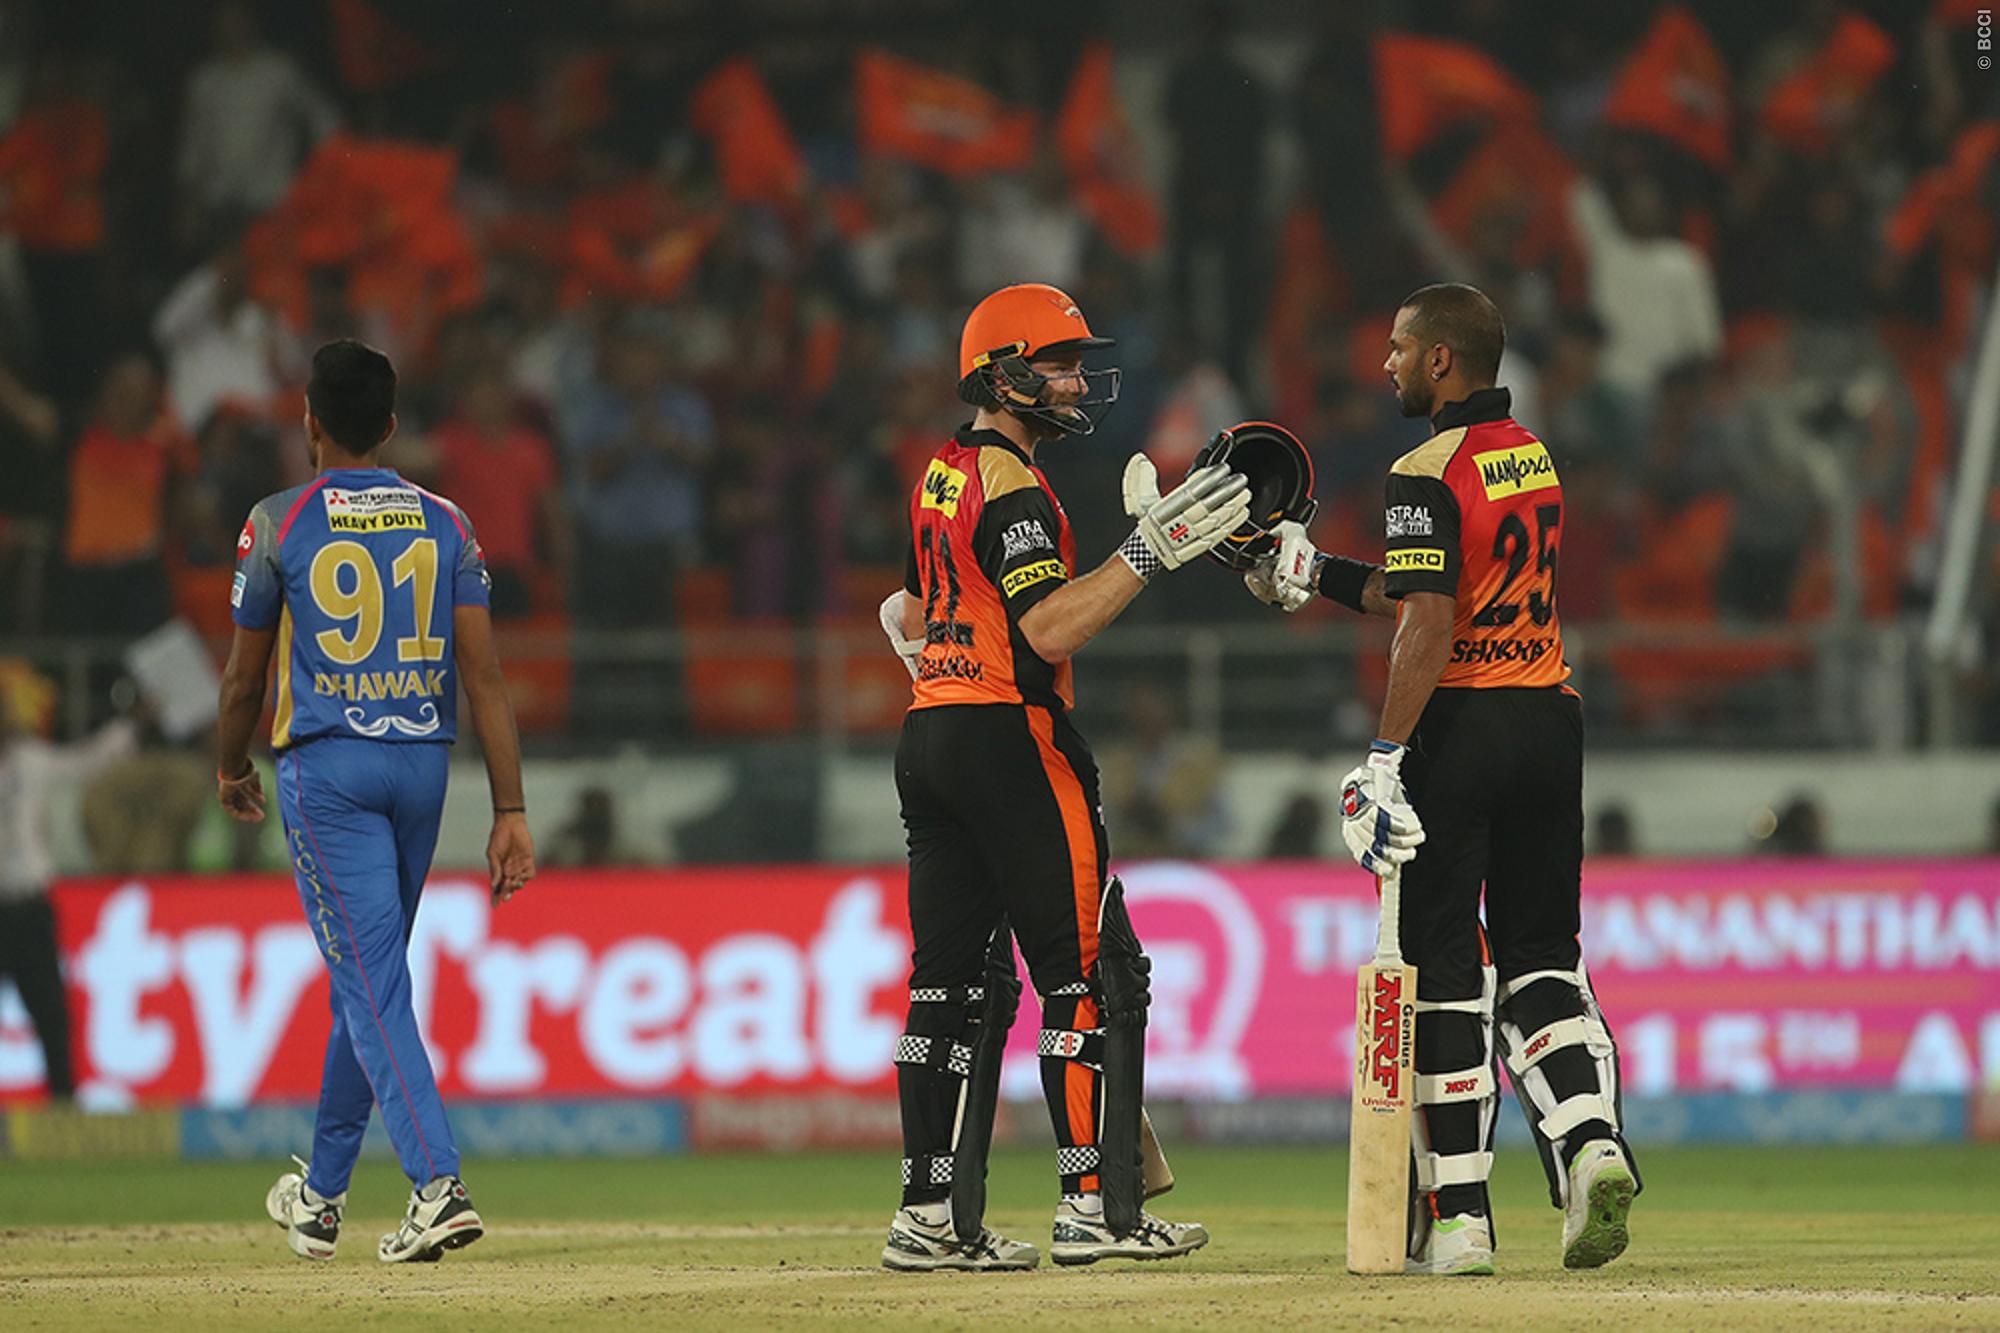 SRH VS RR- राजस्थान रॉयल्स पर धमाकेदार जीत के बाद सनराईजर्स के कप्तान विलियम्सन ने गेंदबाजों या धवन को नहीं बल्कि इन्हें दिया जीत का श्रेय 1